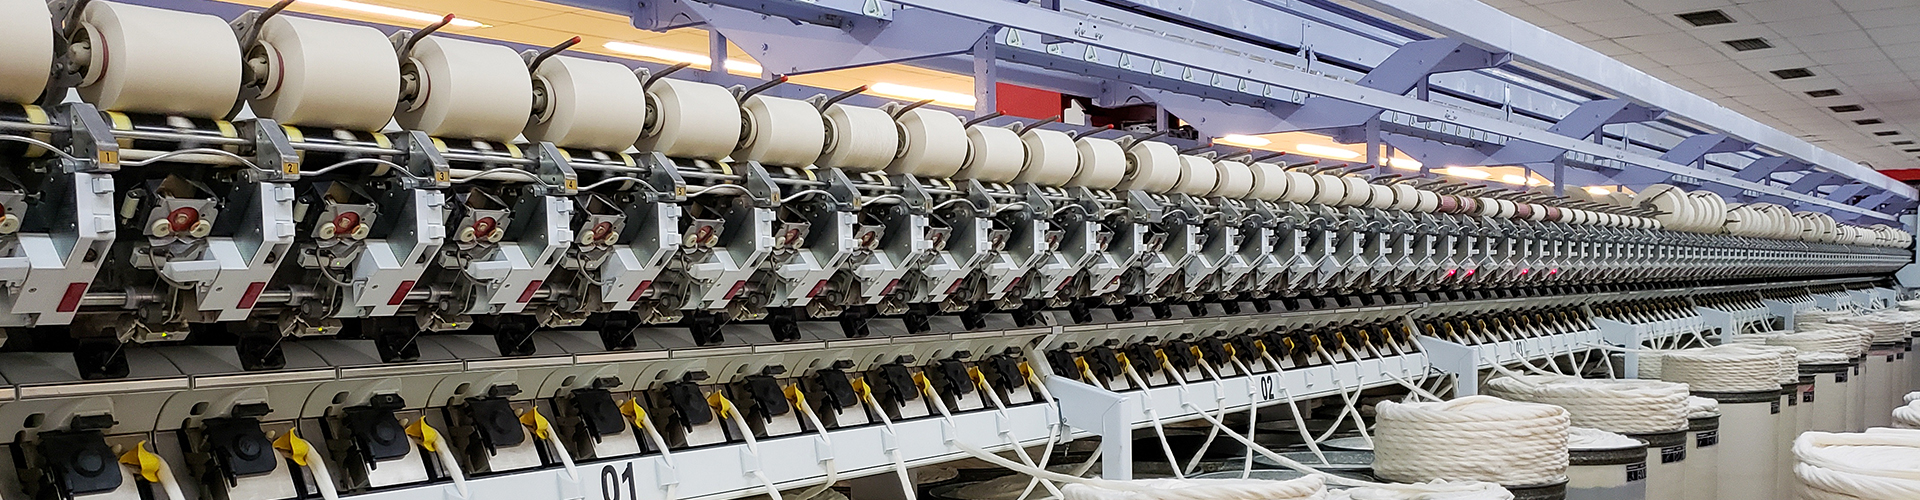 Producción textil en Colombia / Textile production in Colombia